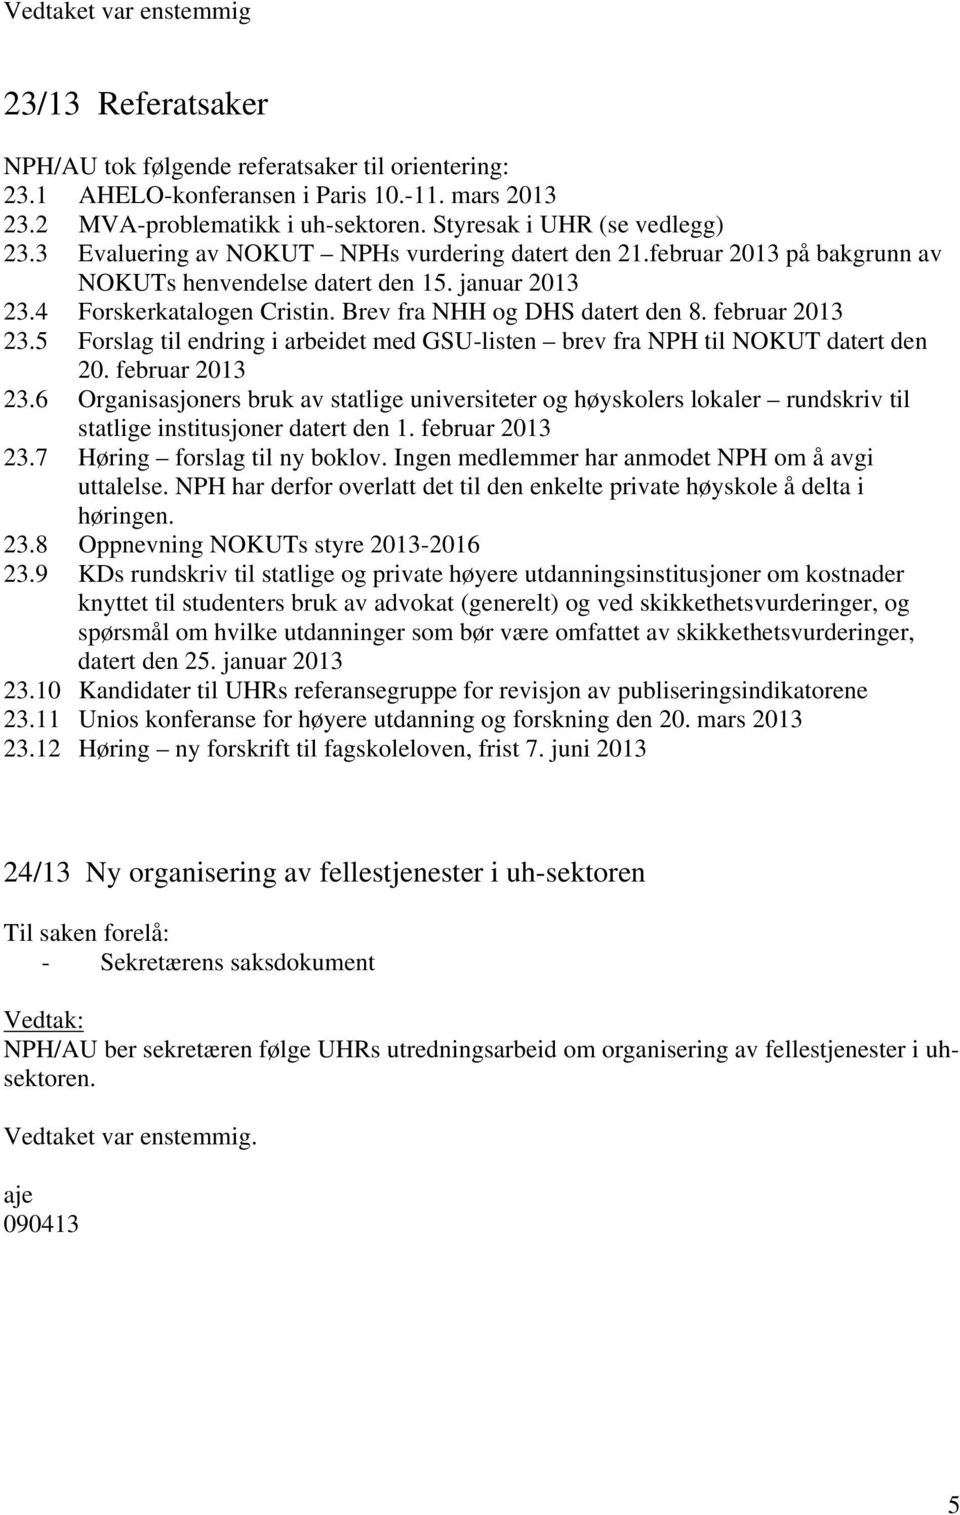 februar 2013 23.5 Forslag til endring i arbeidet med GSU-listen brev fra NPH til NOKUT datert den 20. februar 2013 23.